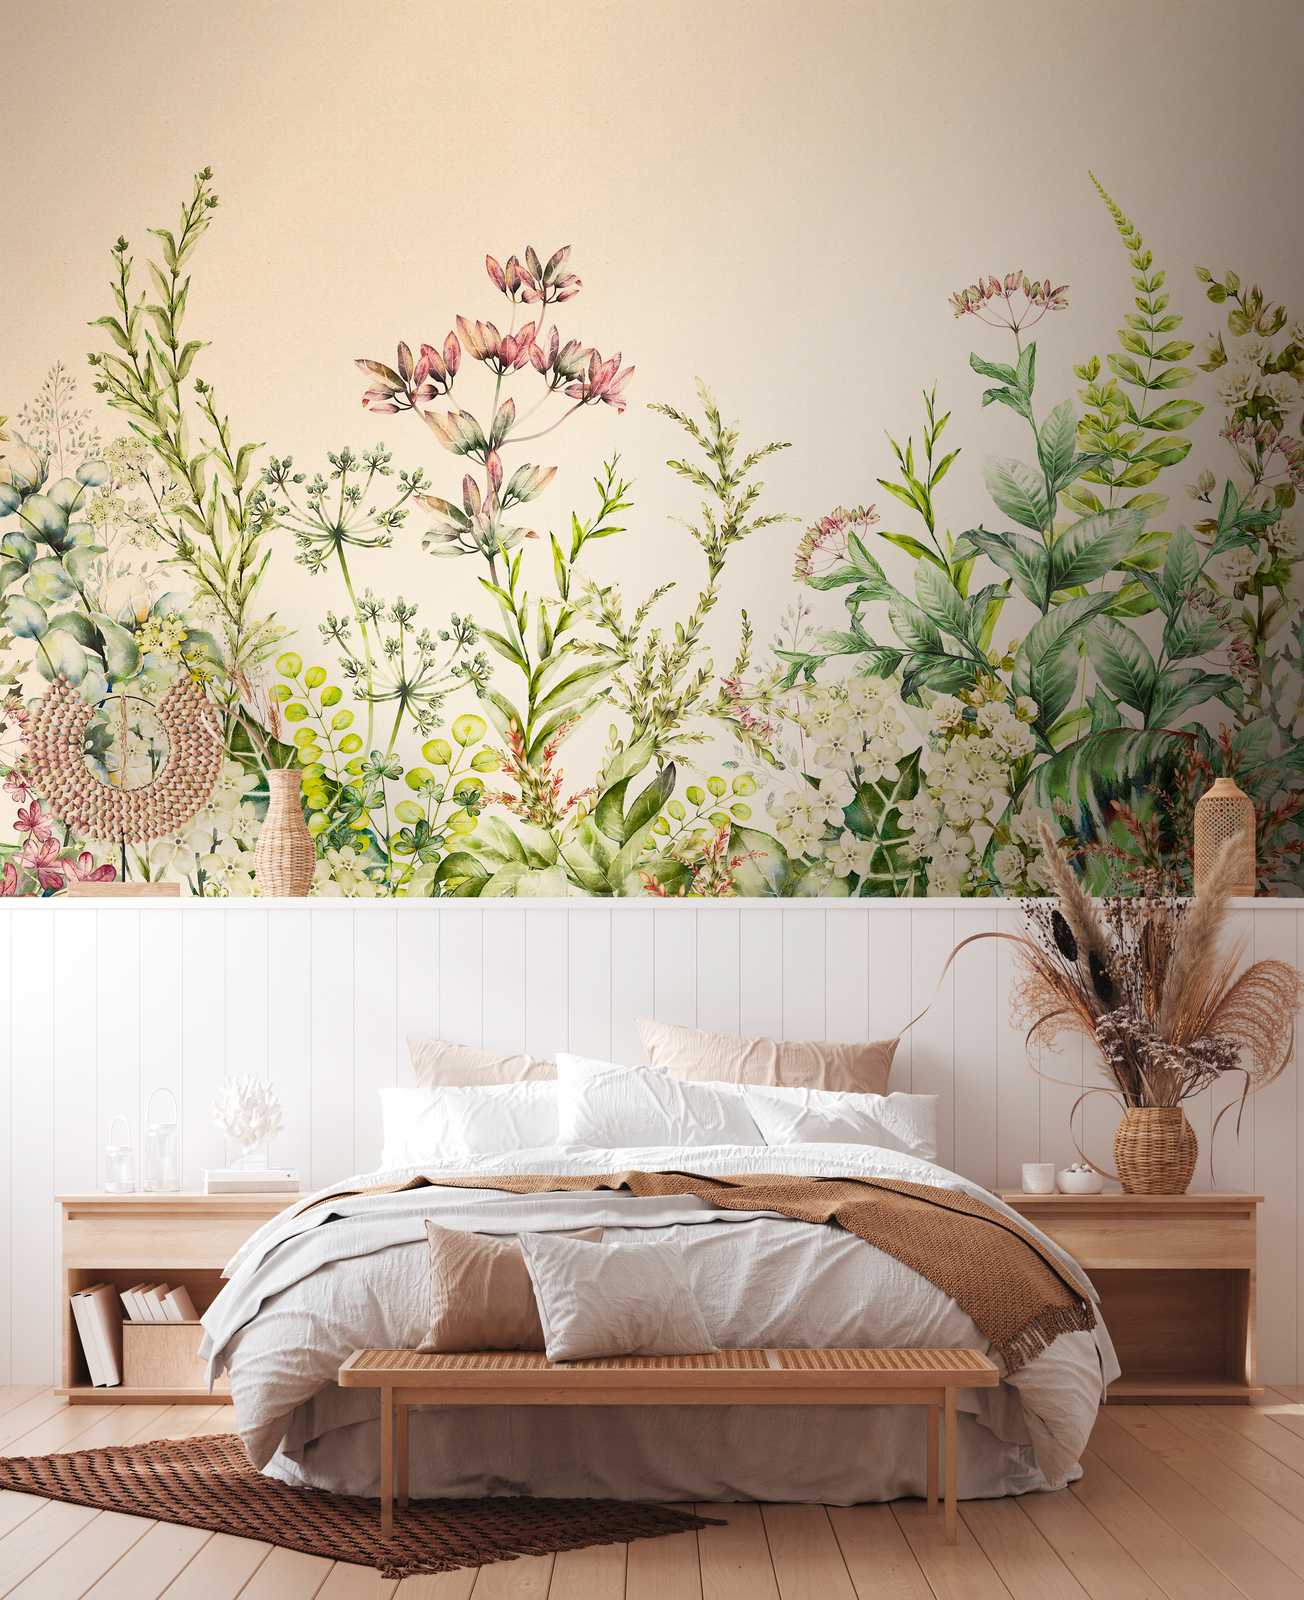             behang nieuwigheid - motief behang botanische print met bloemen & bladeren
        